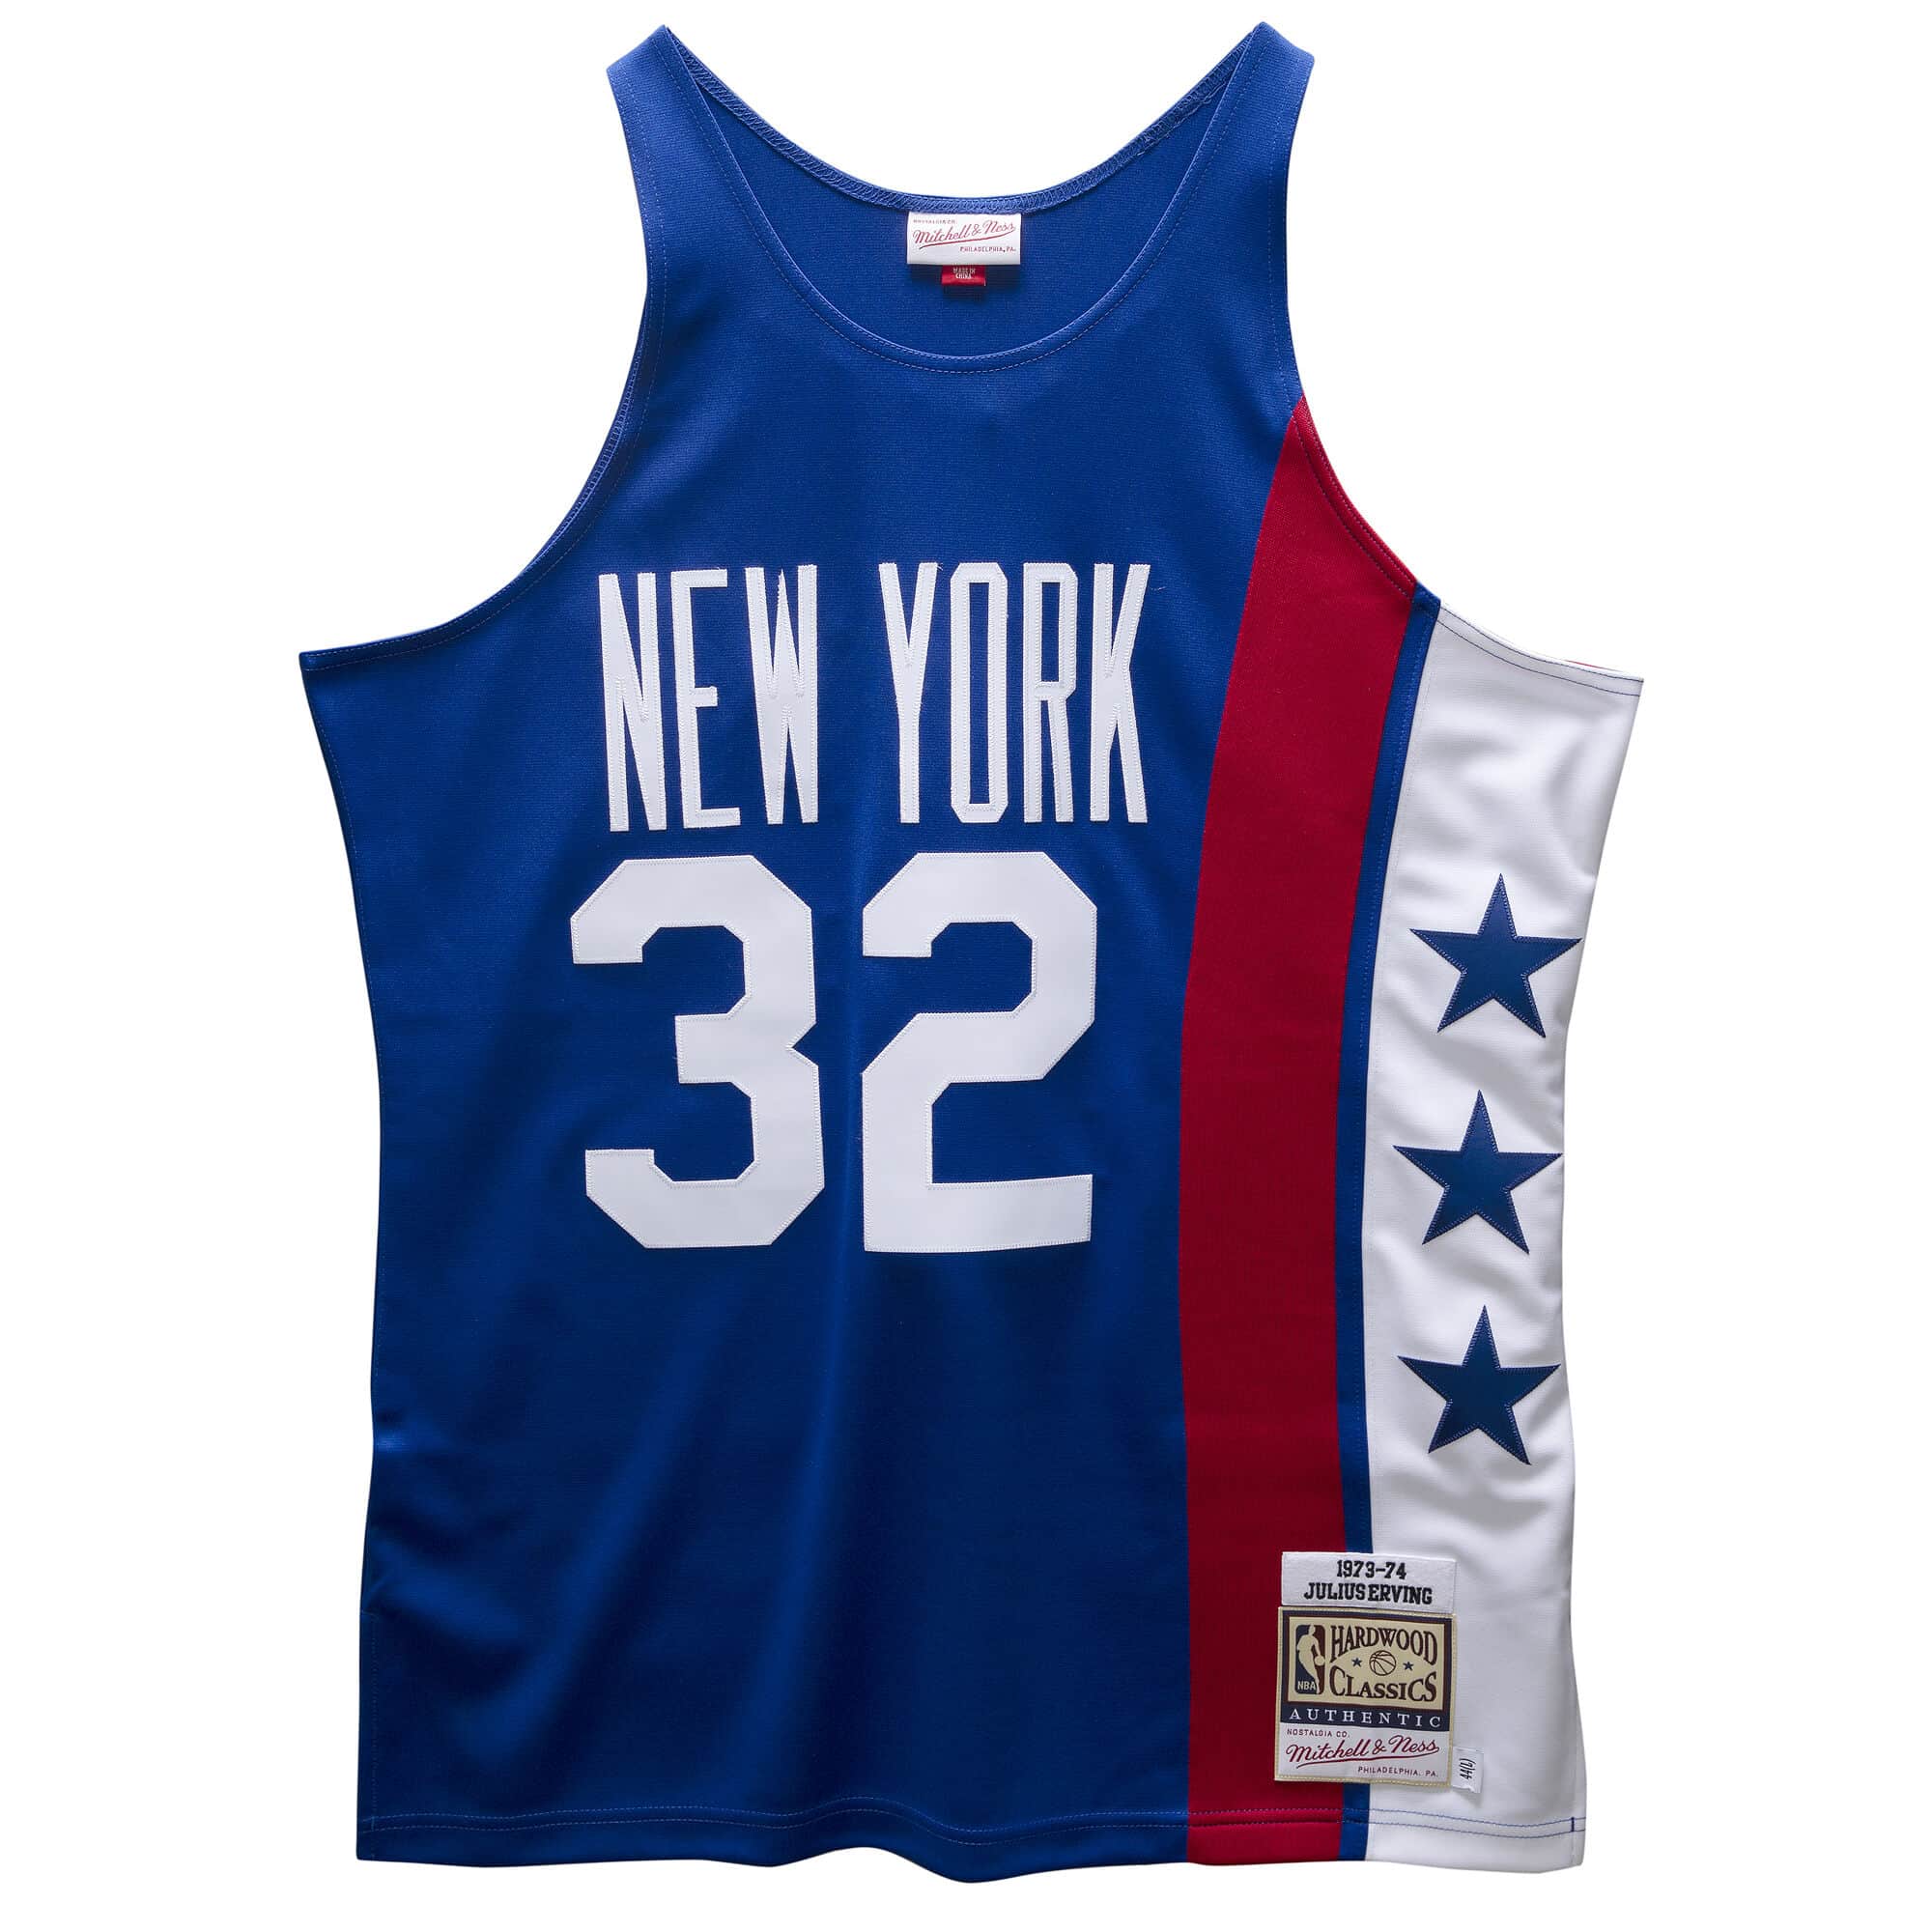 Julius Erving New York Nets 1973-74 Jersey